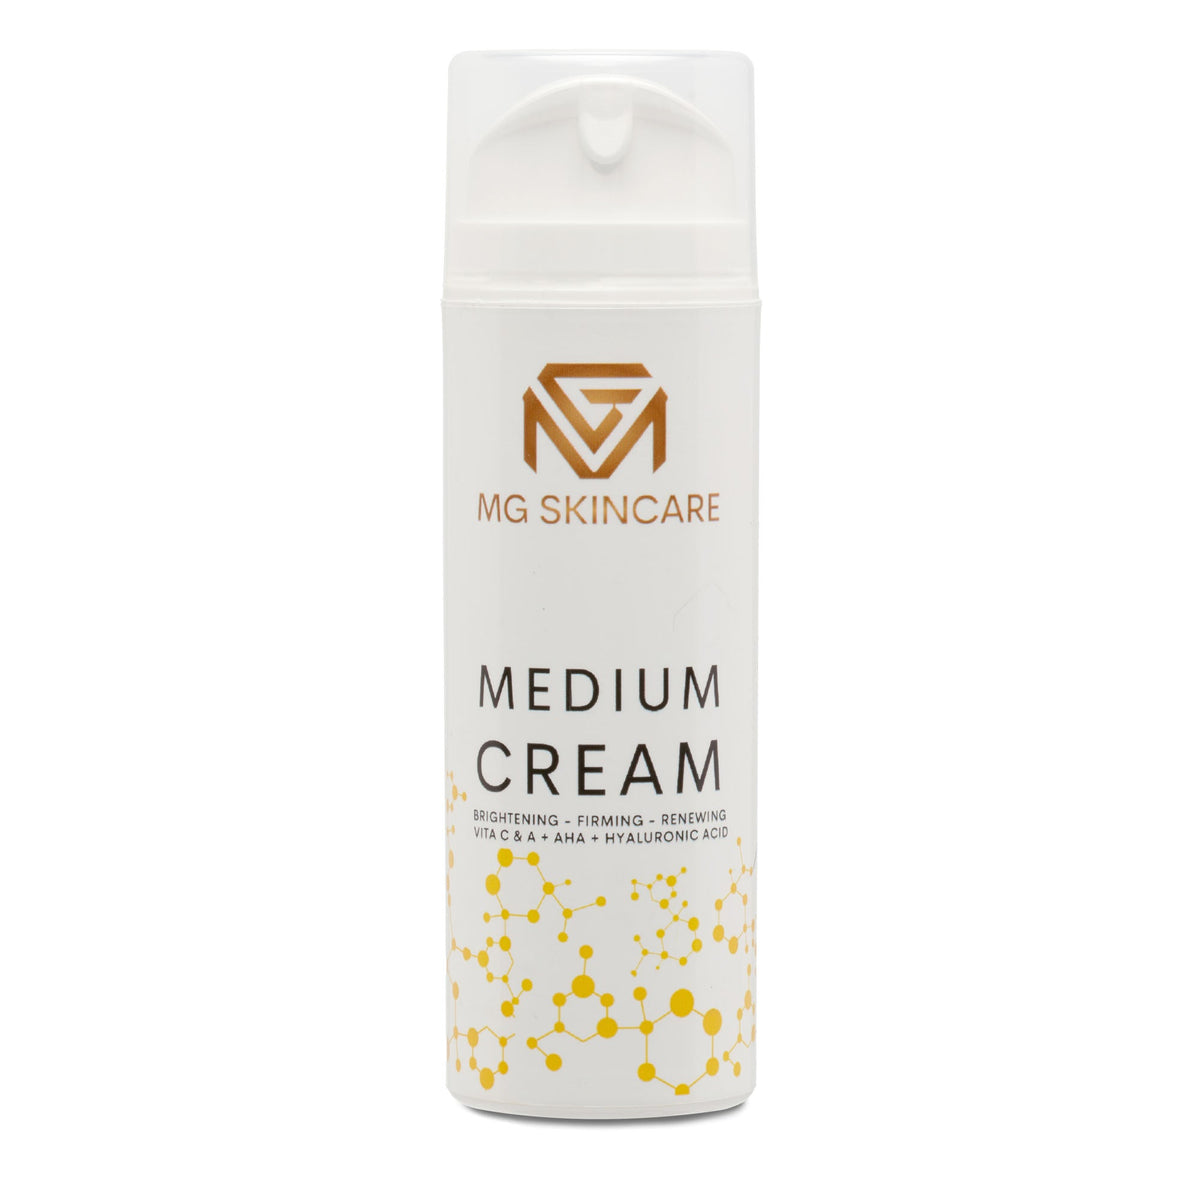 Medium Face Cream With Retinol - Vita C & Hyaluronic Acid